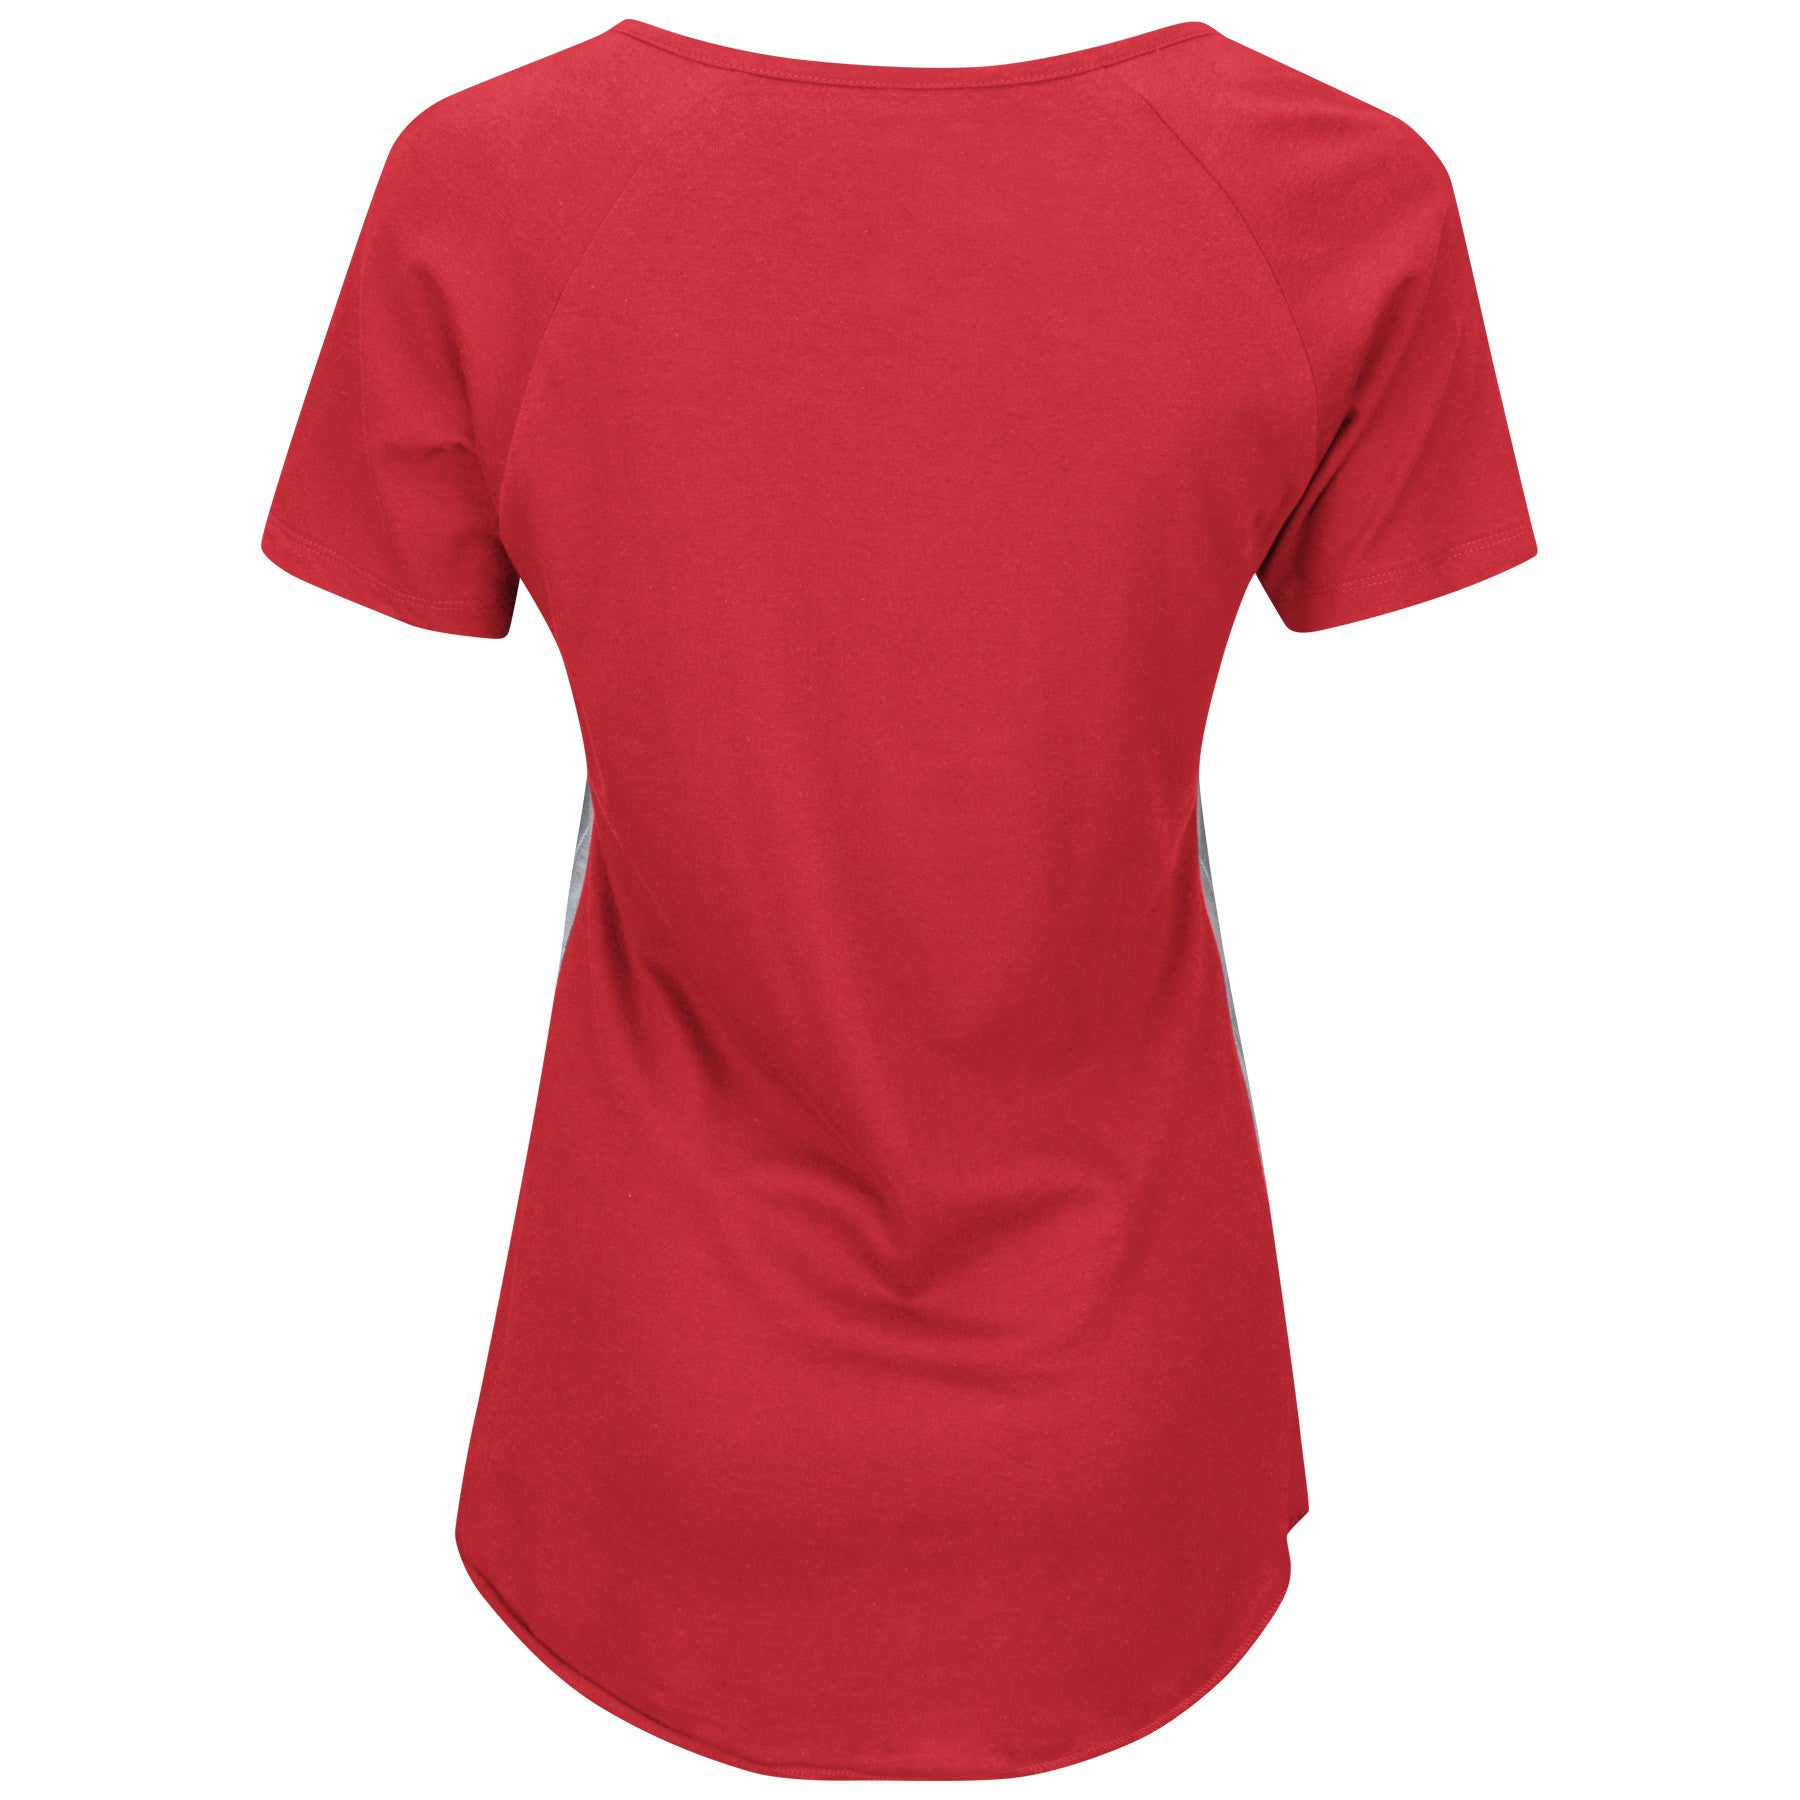 St. Louis Cardinals Tiny Turnip Women's Dirt Ball T-Shirt - Red